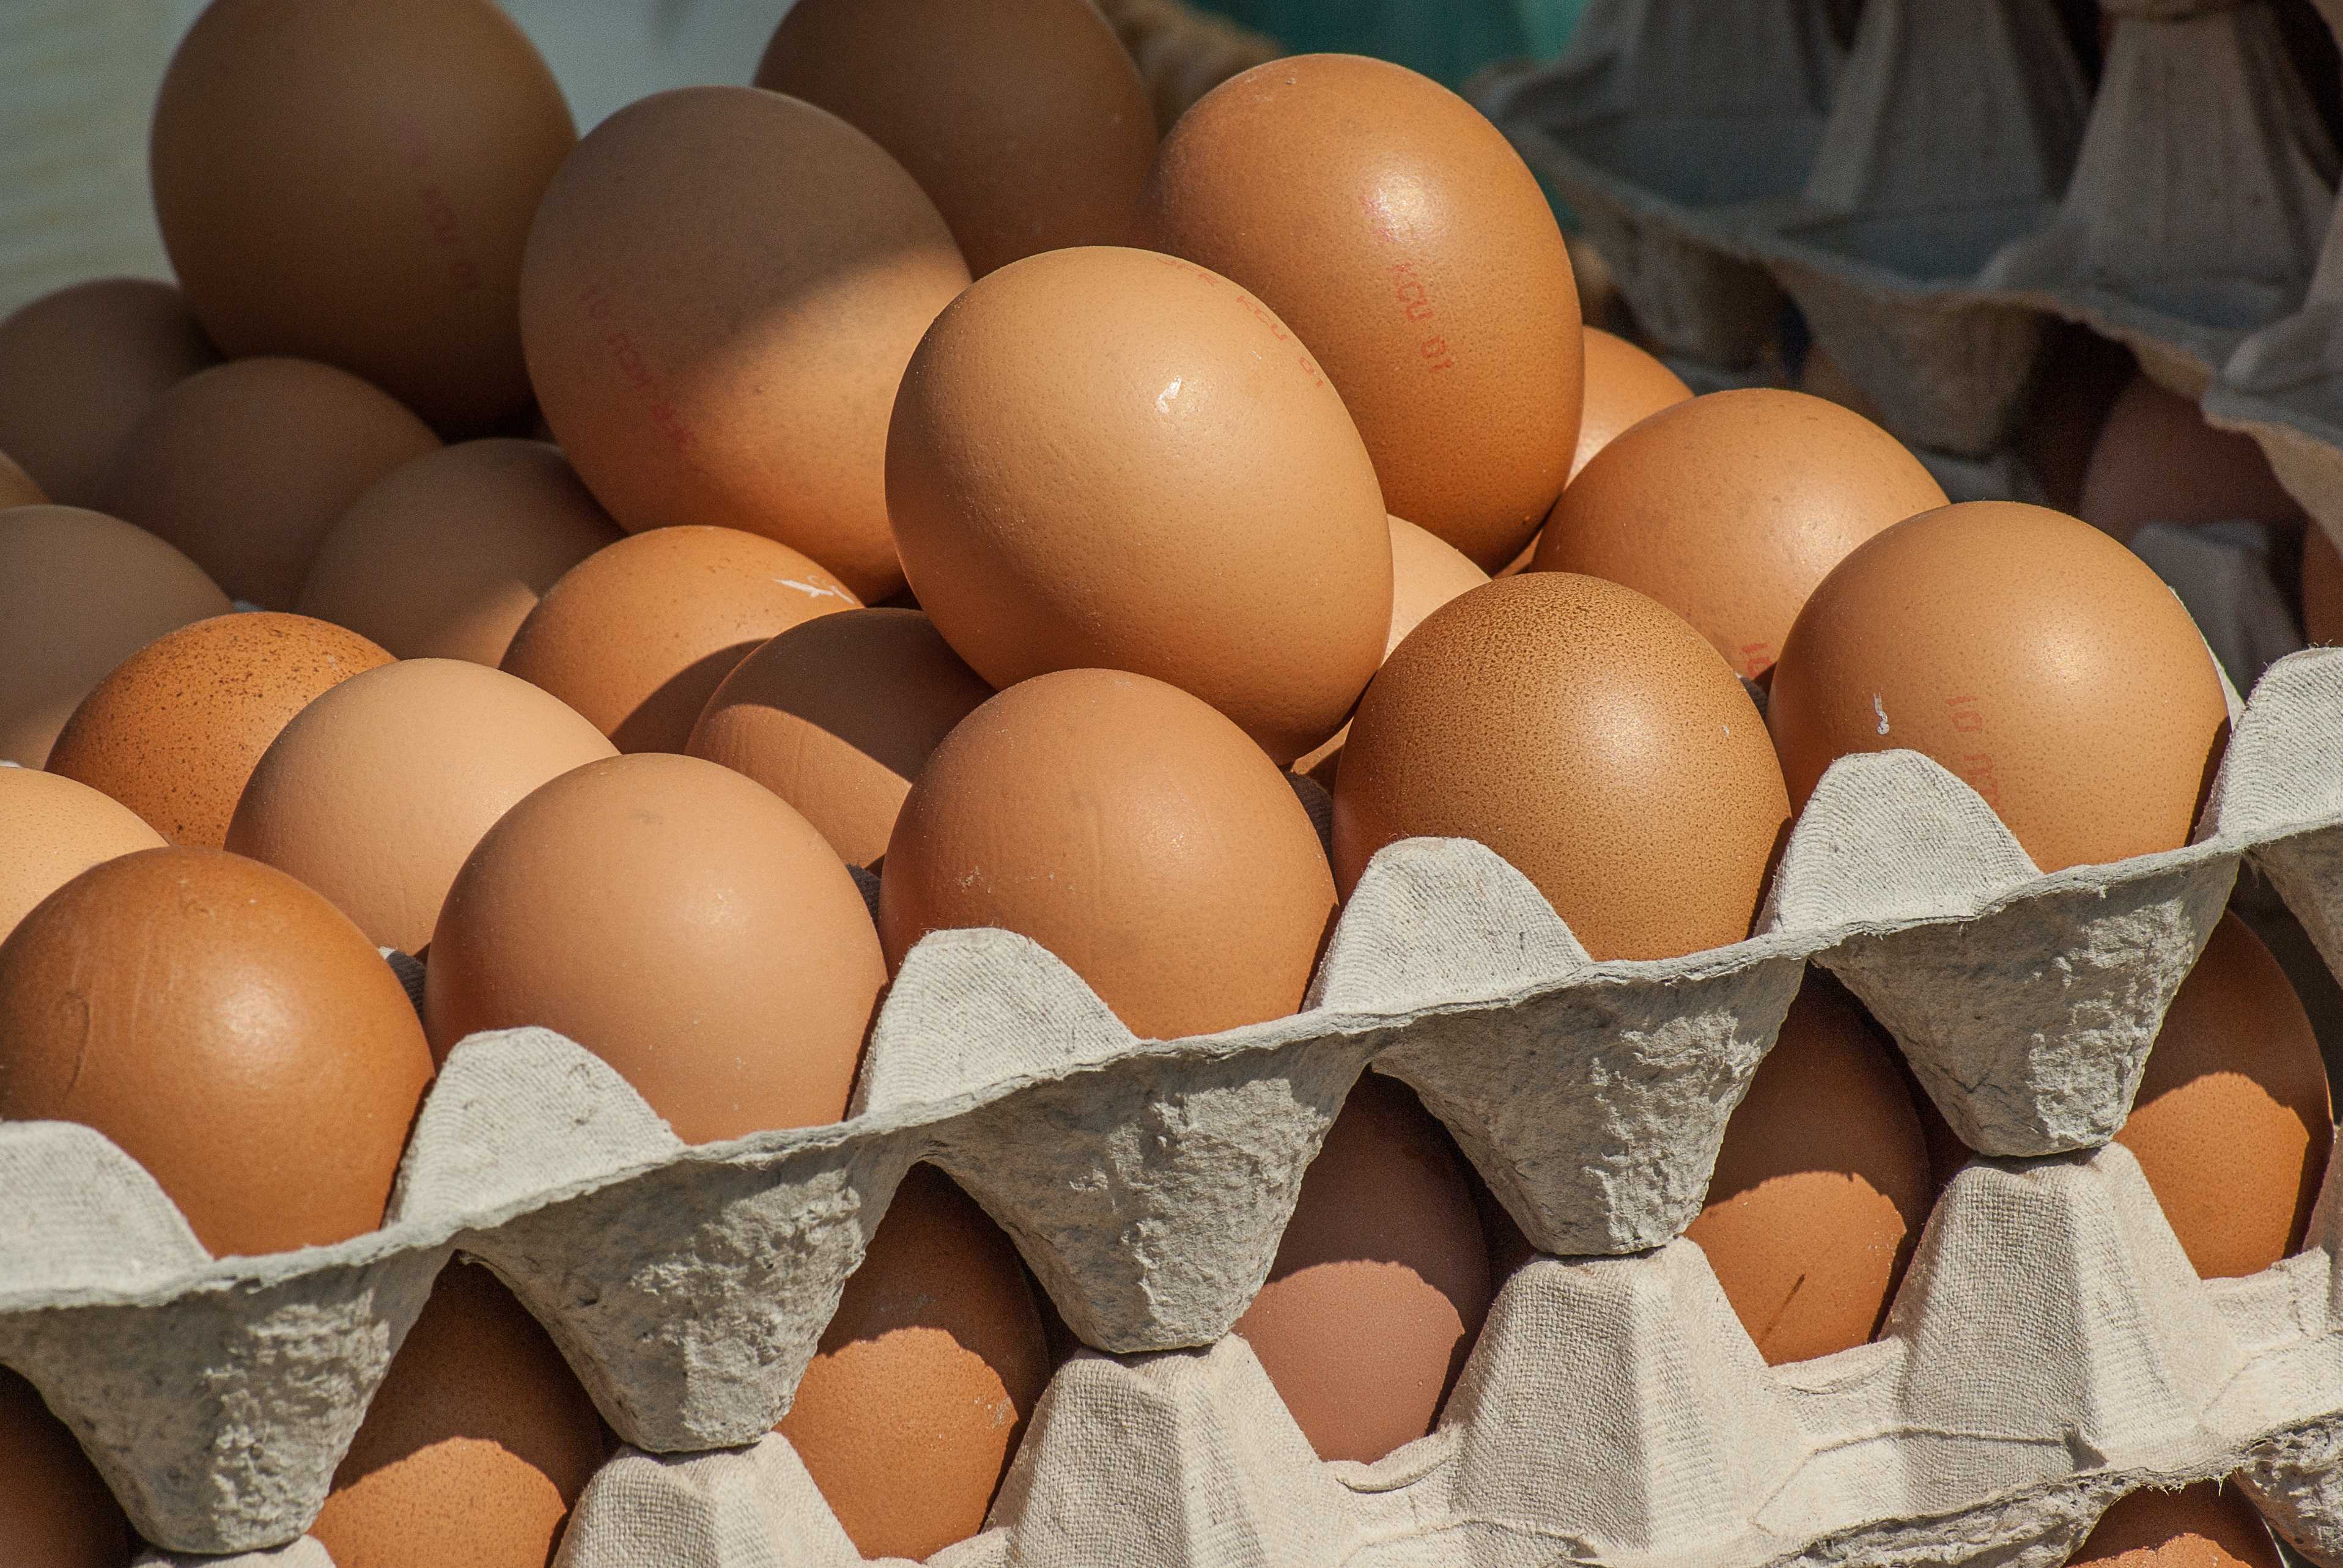 Стали известны настоящие причины падения цен на яйца